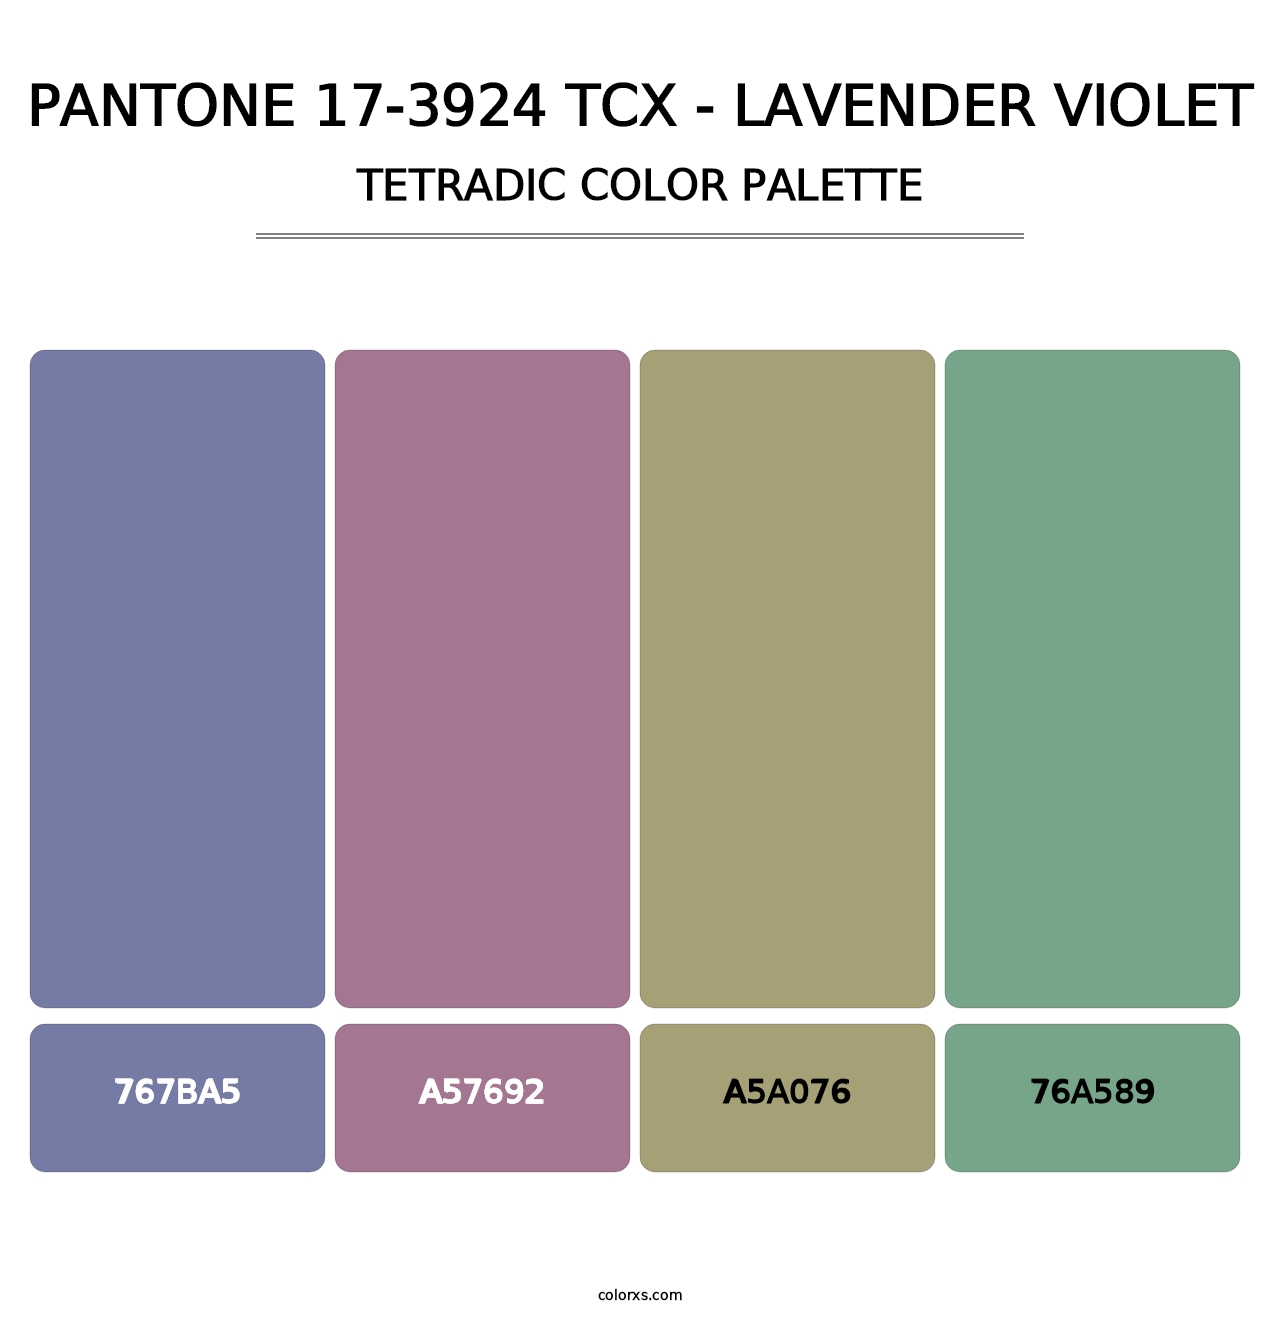 PANTONE 17-3924 TCX - Lavender Violet - Tetradic Color Palette